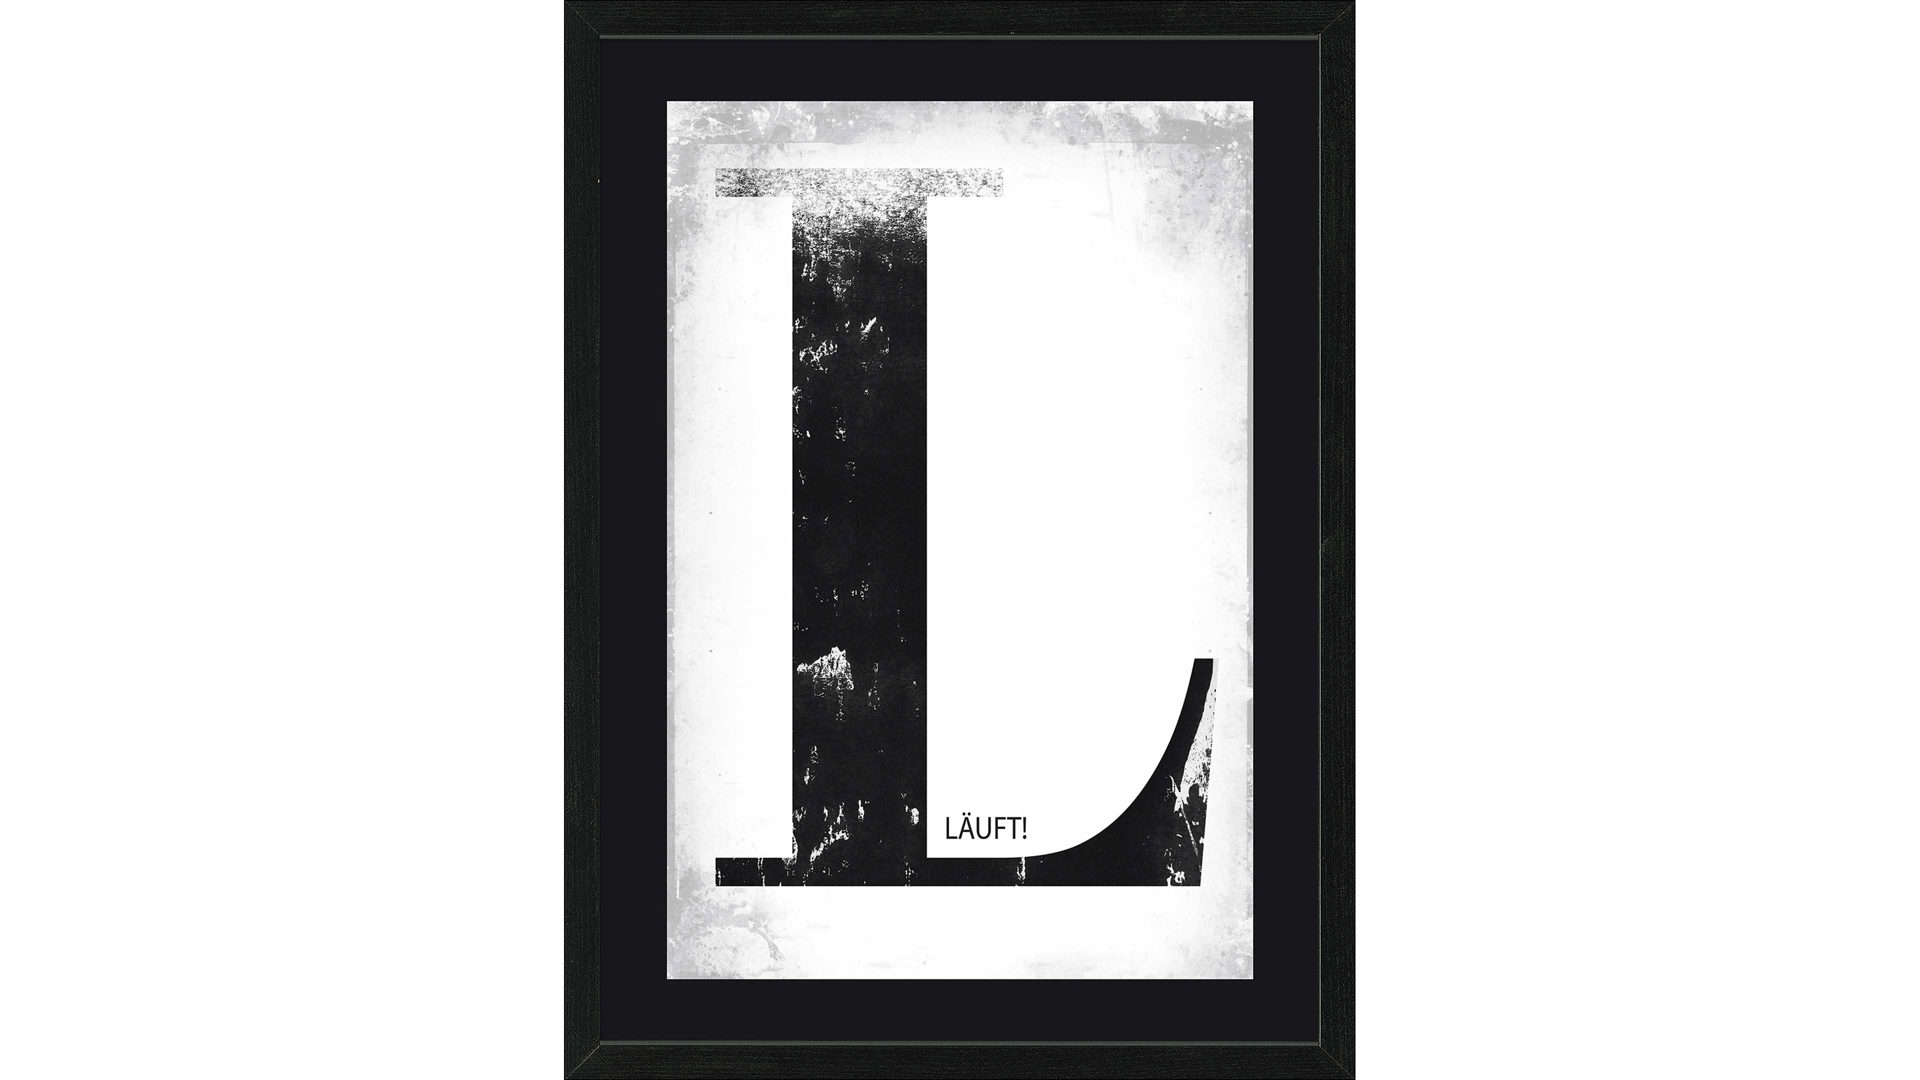 Kunstdruck Pro®art bilderpalette aus Karton / Papier / Pappe in Schwarz PRO®ART Kunstdruck Läuft Schwarz & Weiß - ca. 35 x 45 cm